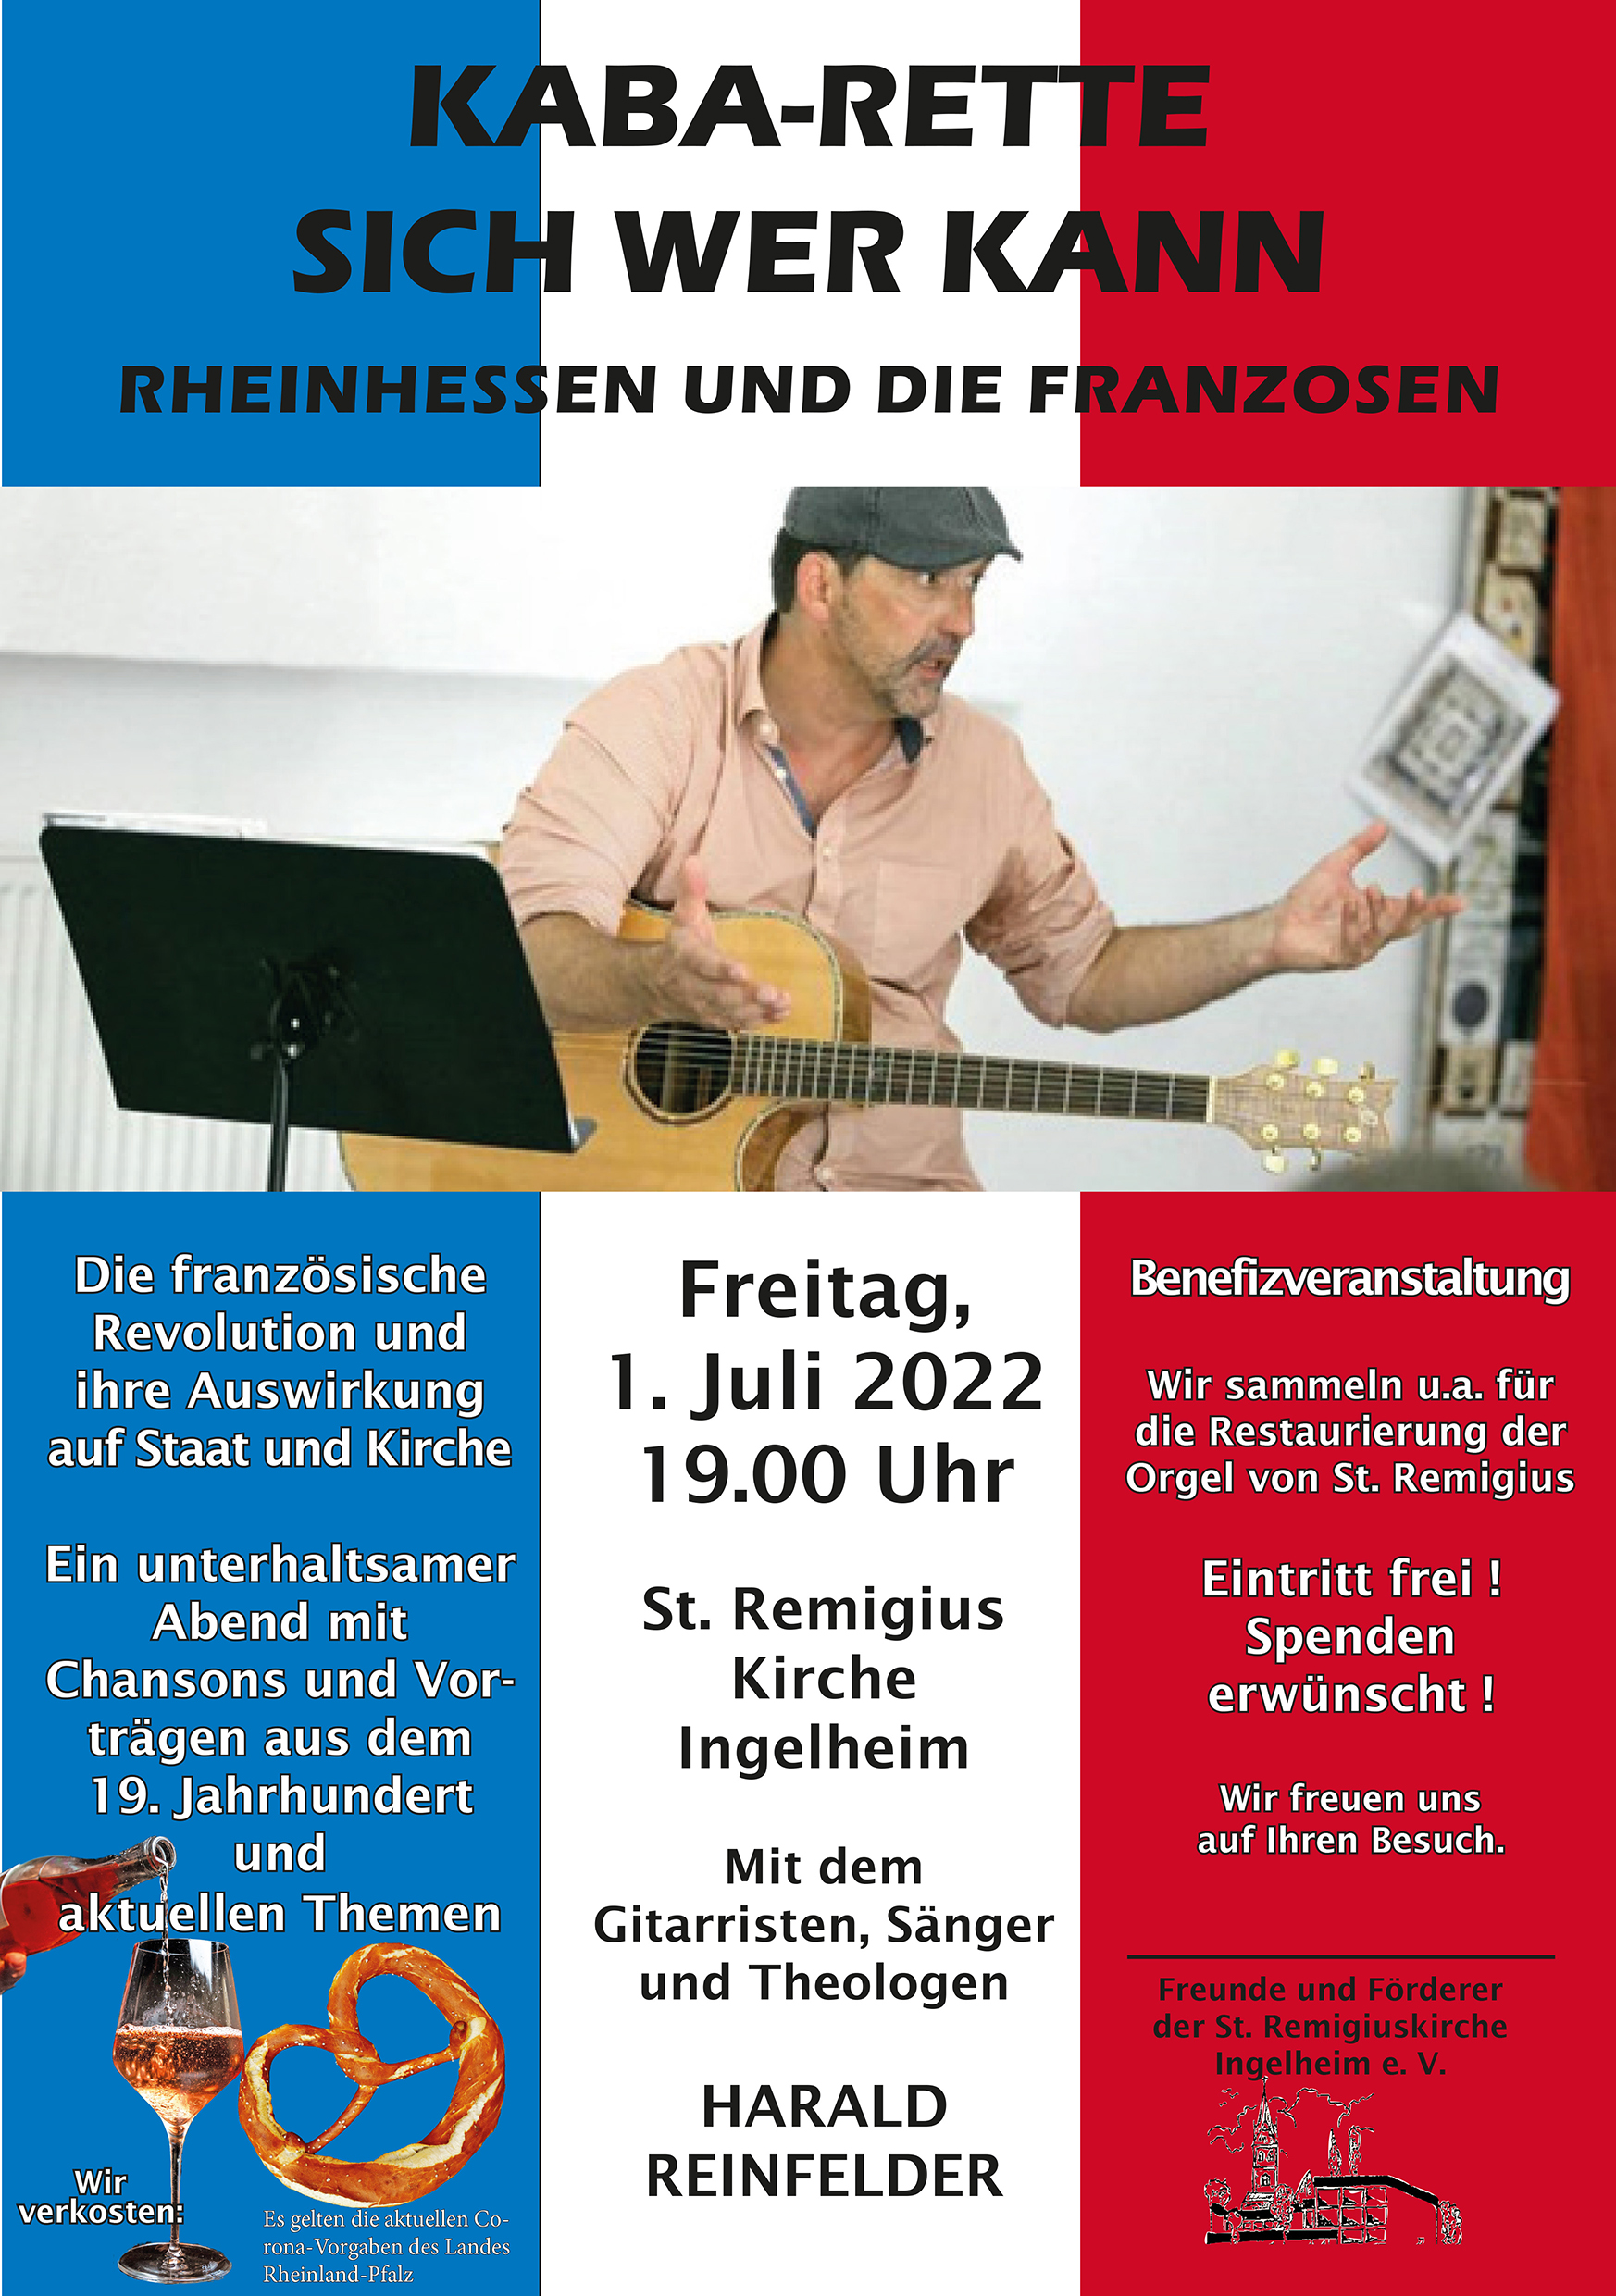 Franzosen-Rheinhessen-Abend am 1. Juli (c) Freunde und Förderer der St. Remigius Kirche Ingelheim e.V.